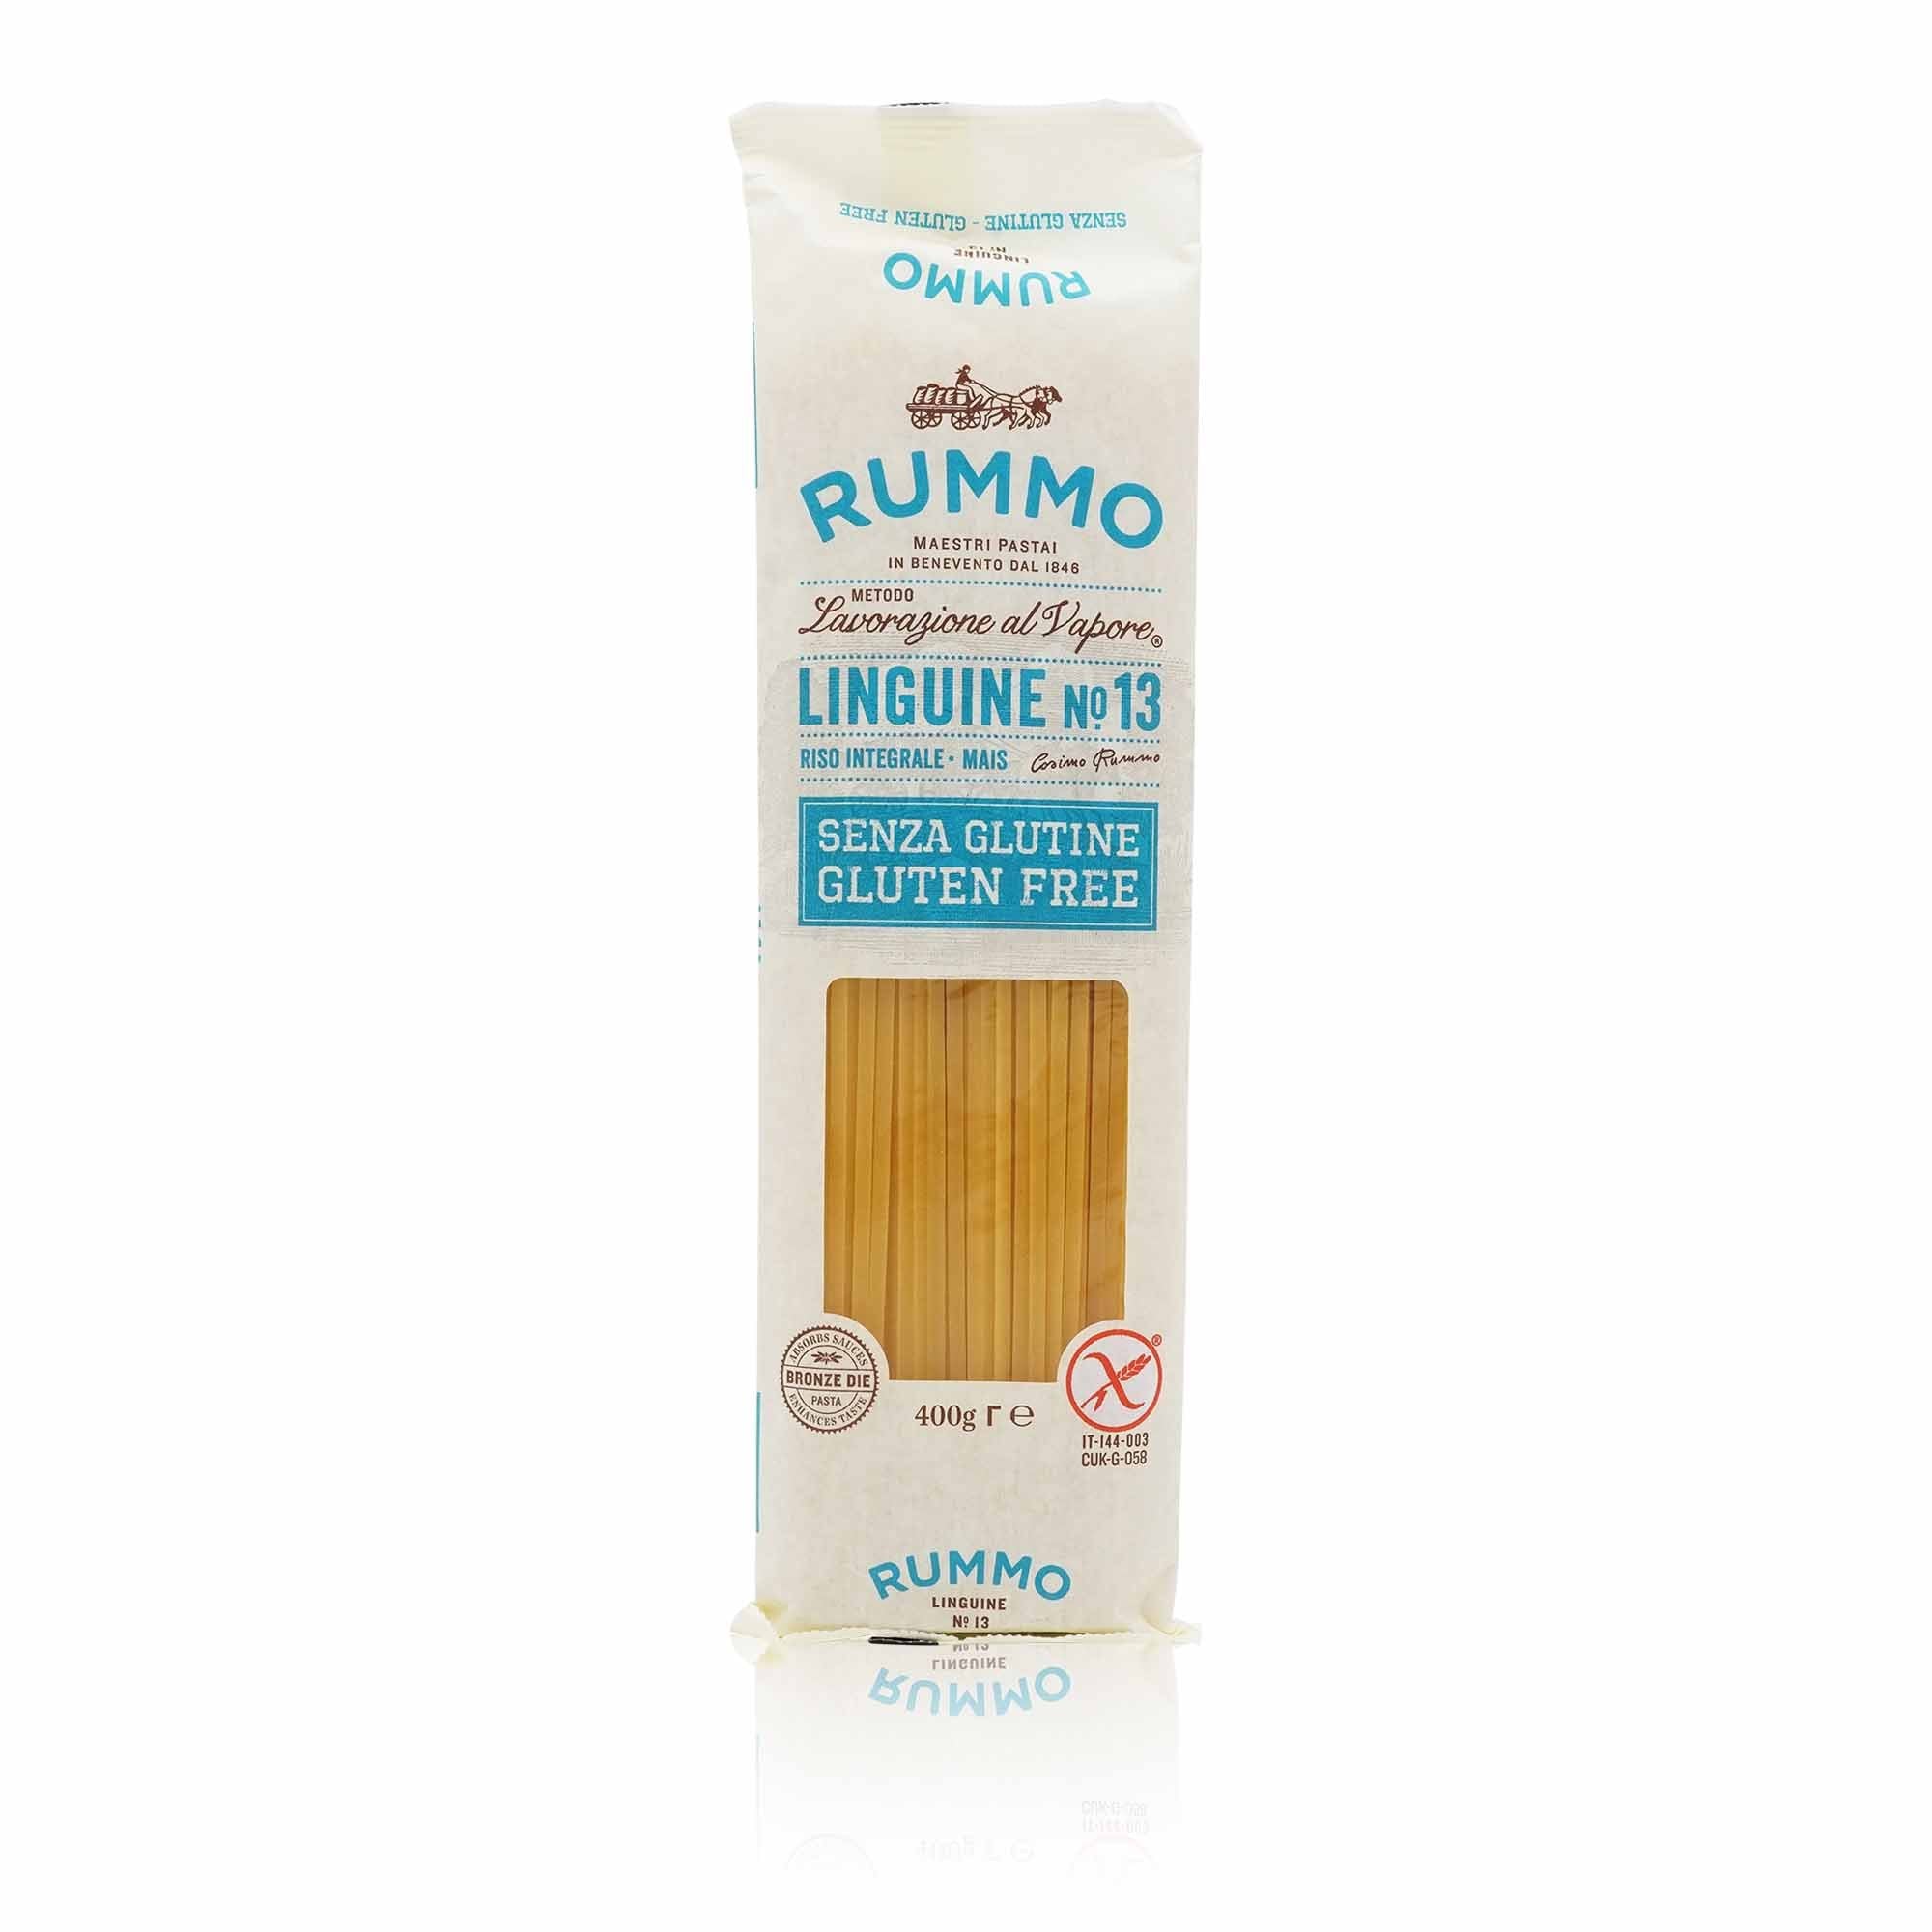 RUMMO Linguine N°13 senza glutine – Linguine N°13 Glutenfrei - 0,400kg - italienisch - einkaufen.de